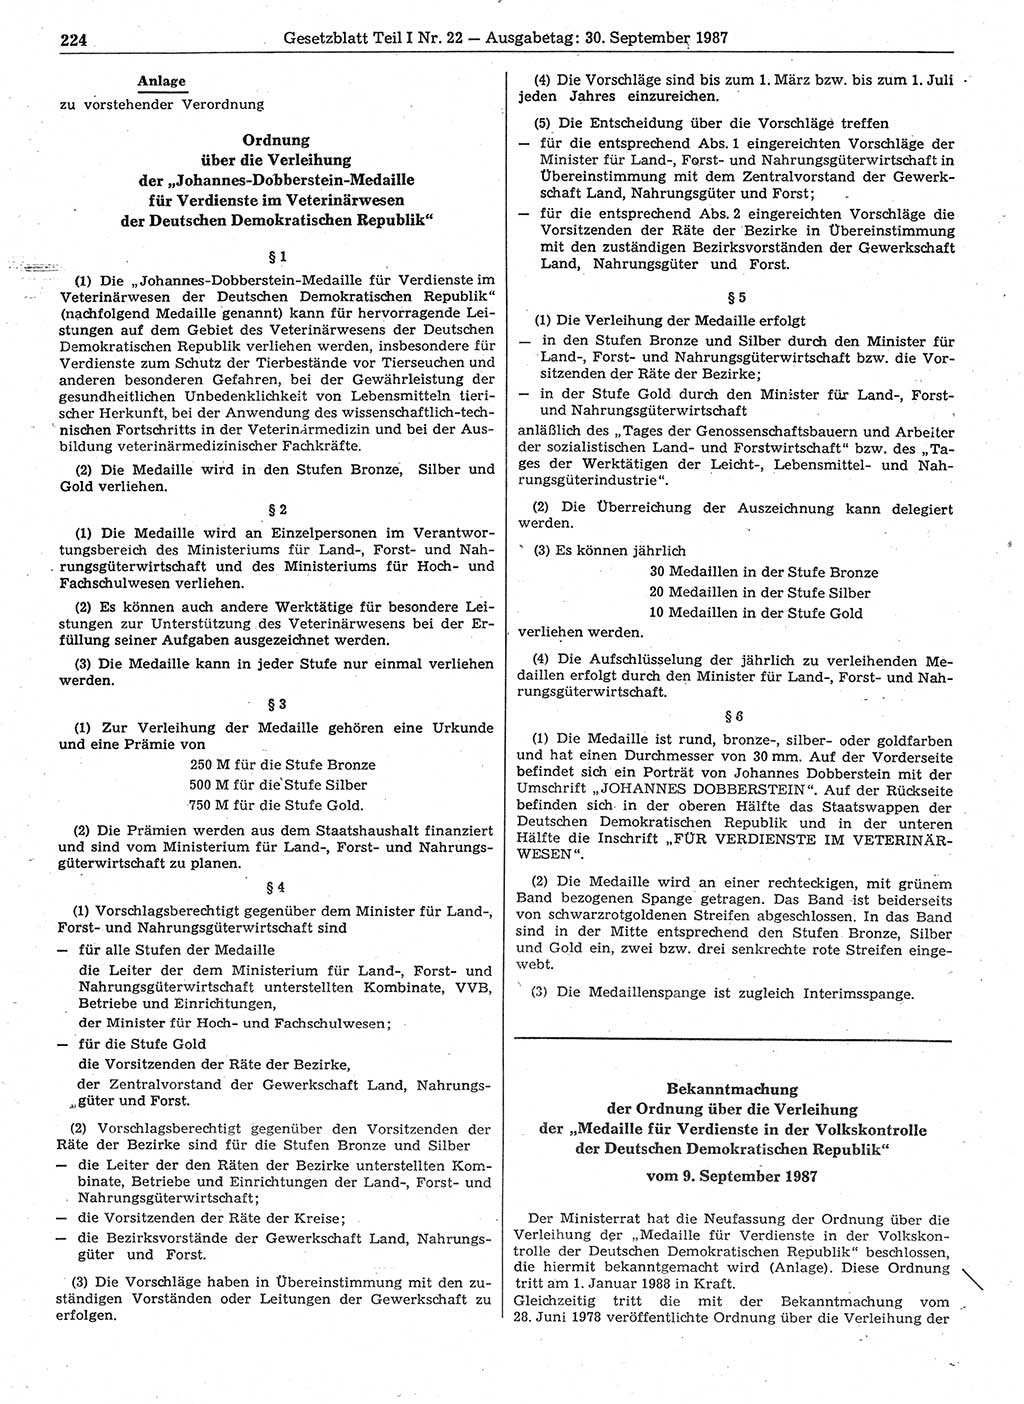 Gesetzblatt (GBl.) der Deutschen Demokratischen Republik (DDR) Teil Ⅰ 1987, Seite 224 (GBl. DDR Ⅰ 1987, S. 224)